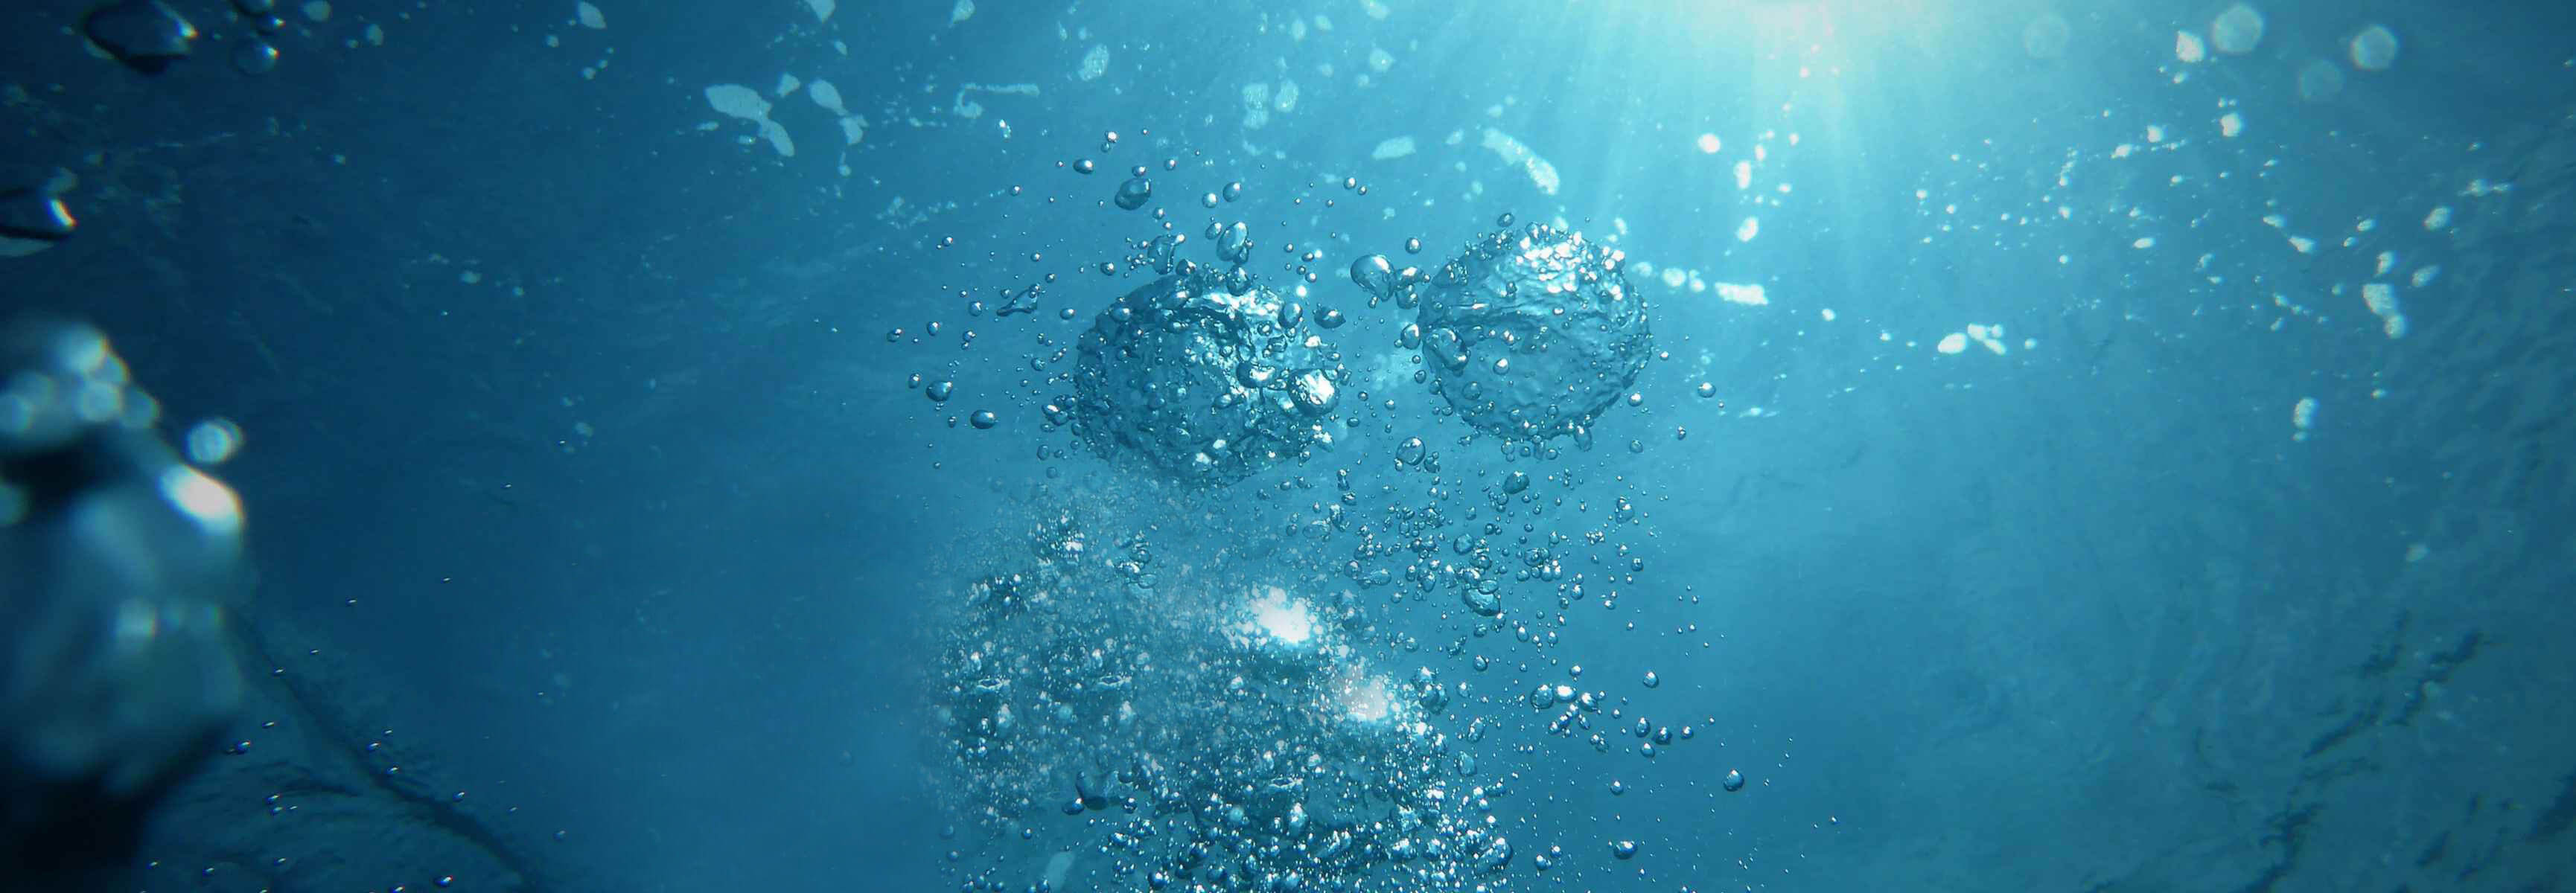 Unterwasserbild mit Luftblasen